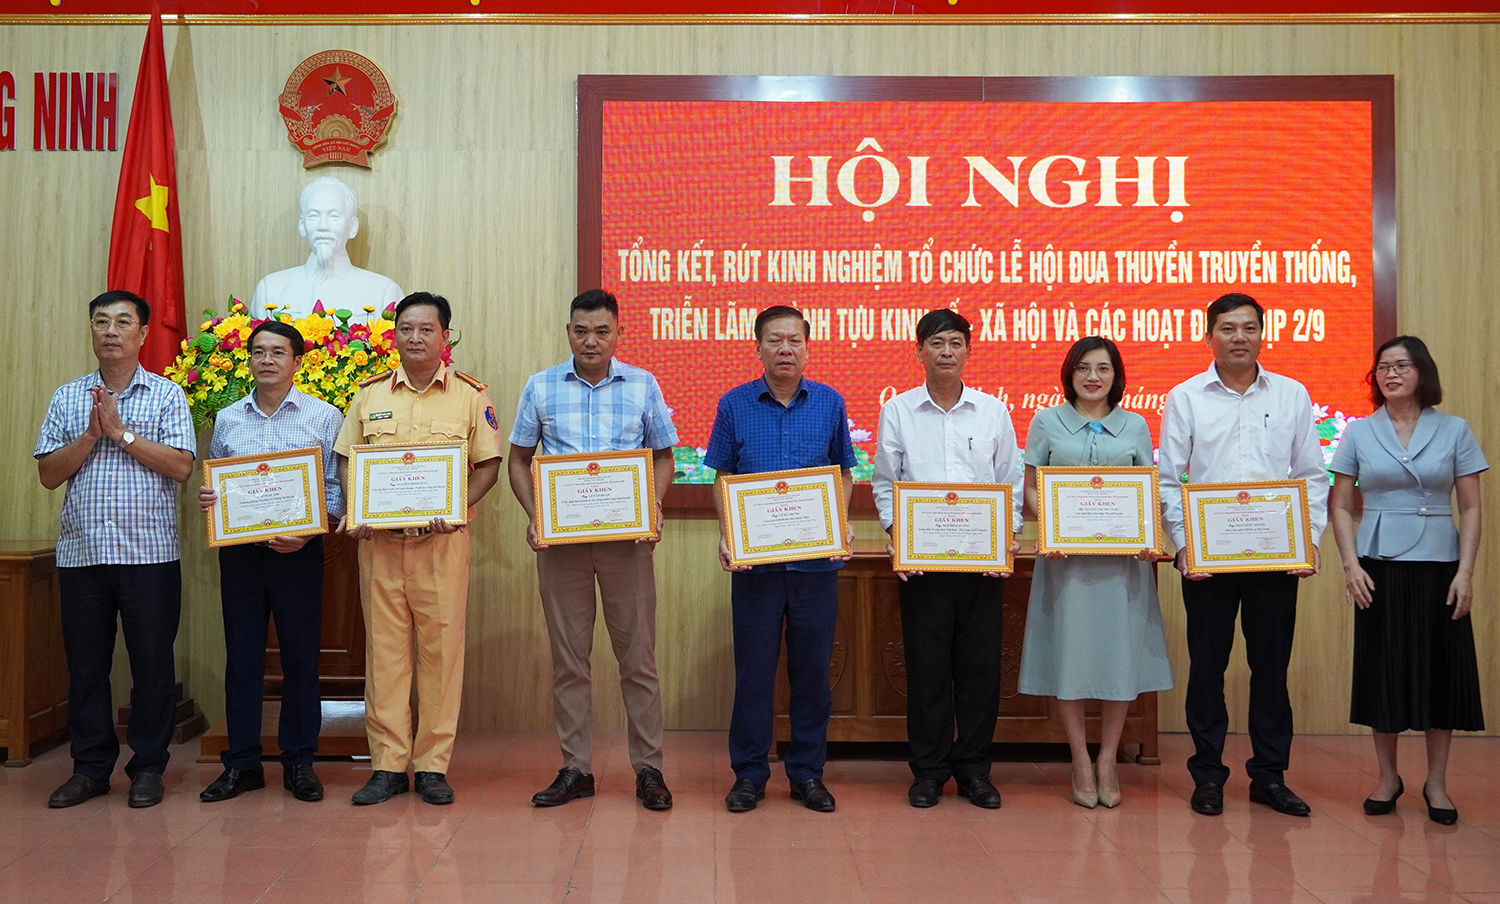 Quảng Ninh: Tổng kết lễ hội đua thuyền truyền thống và các hoạt động dịp lễ 2/9